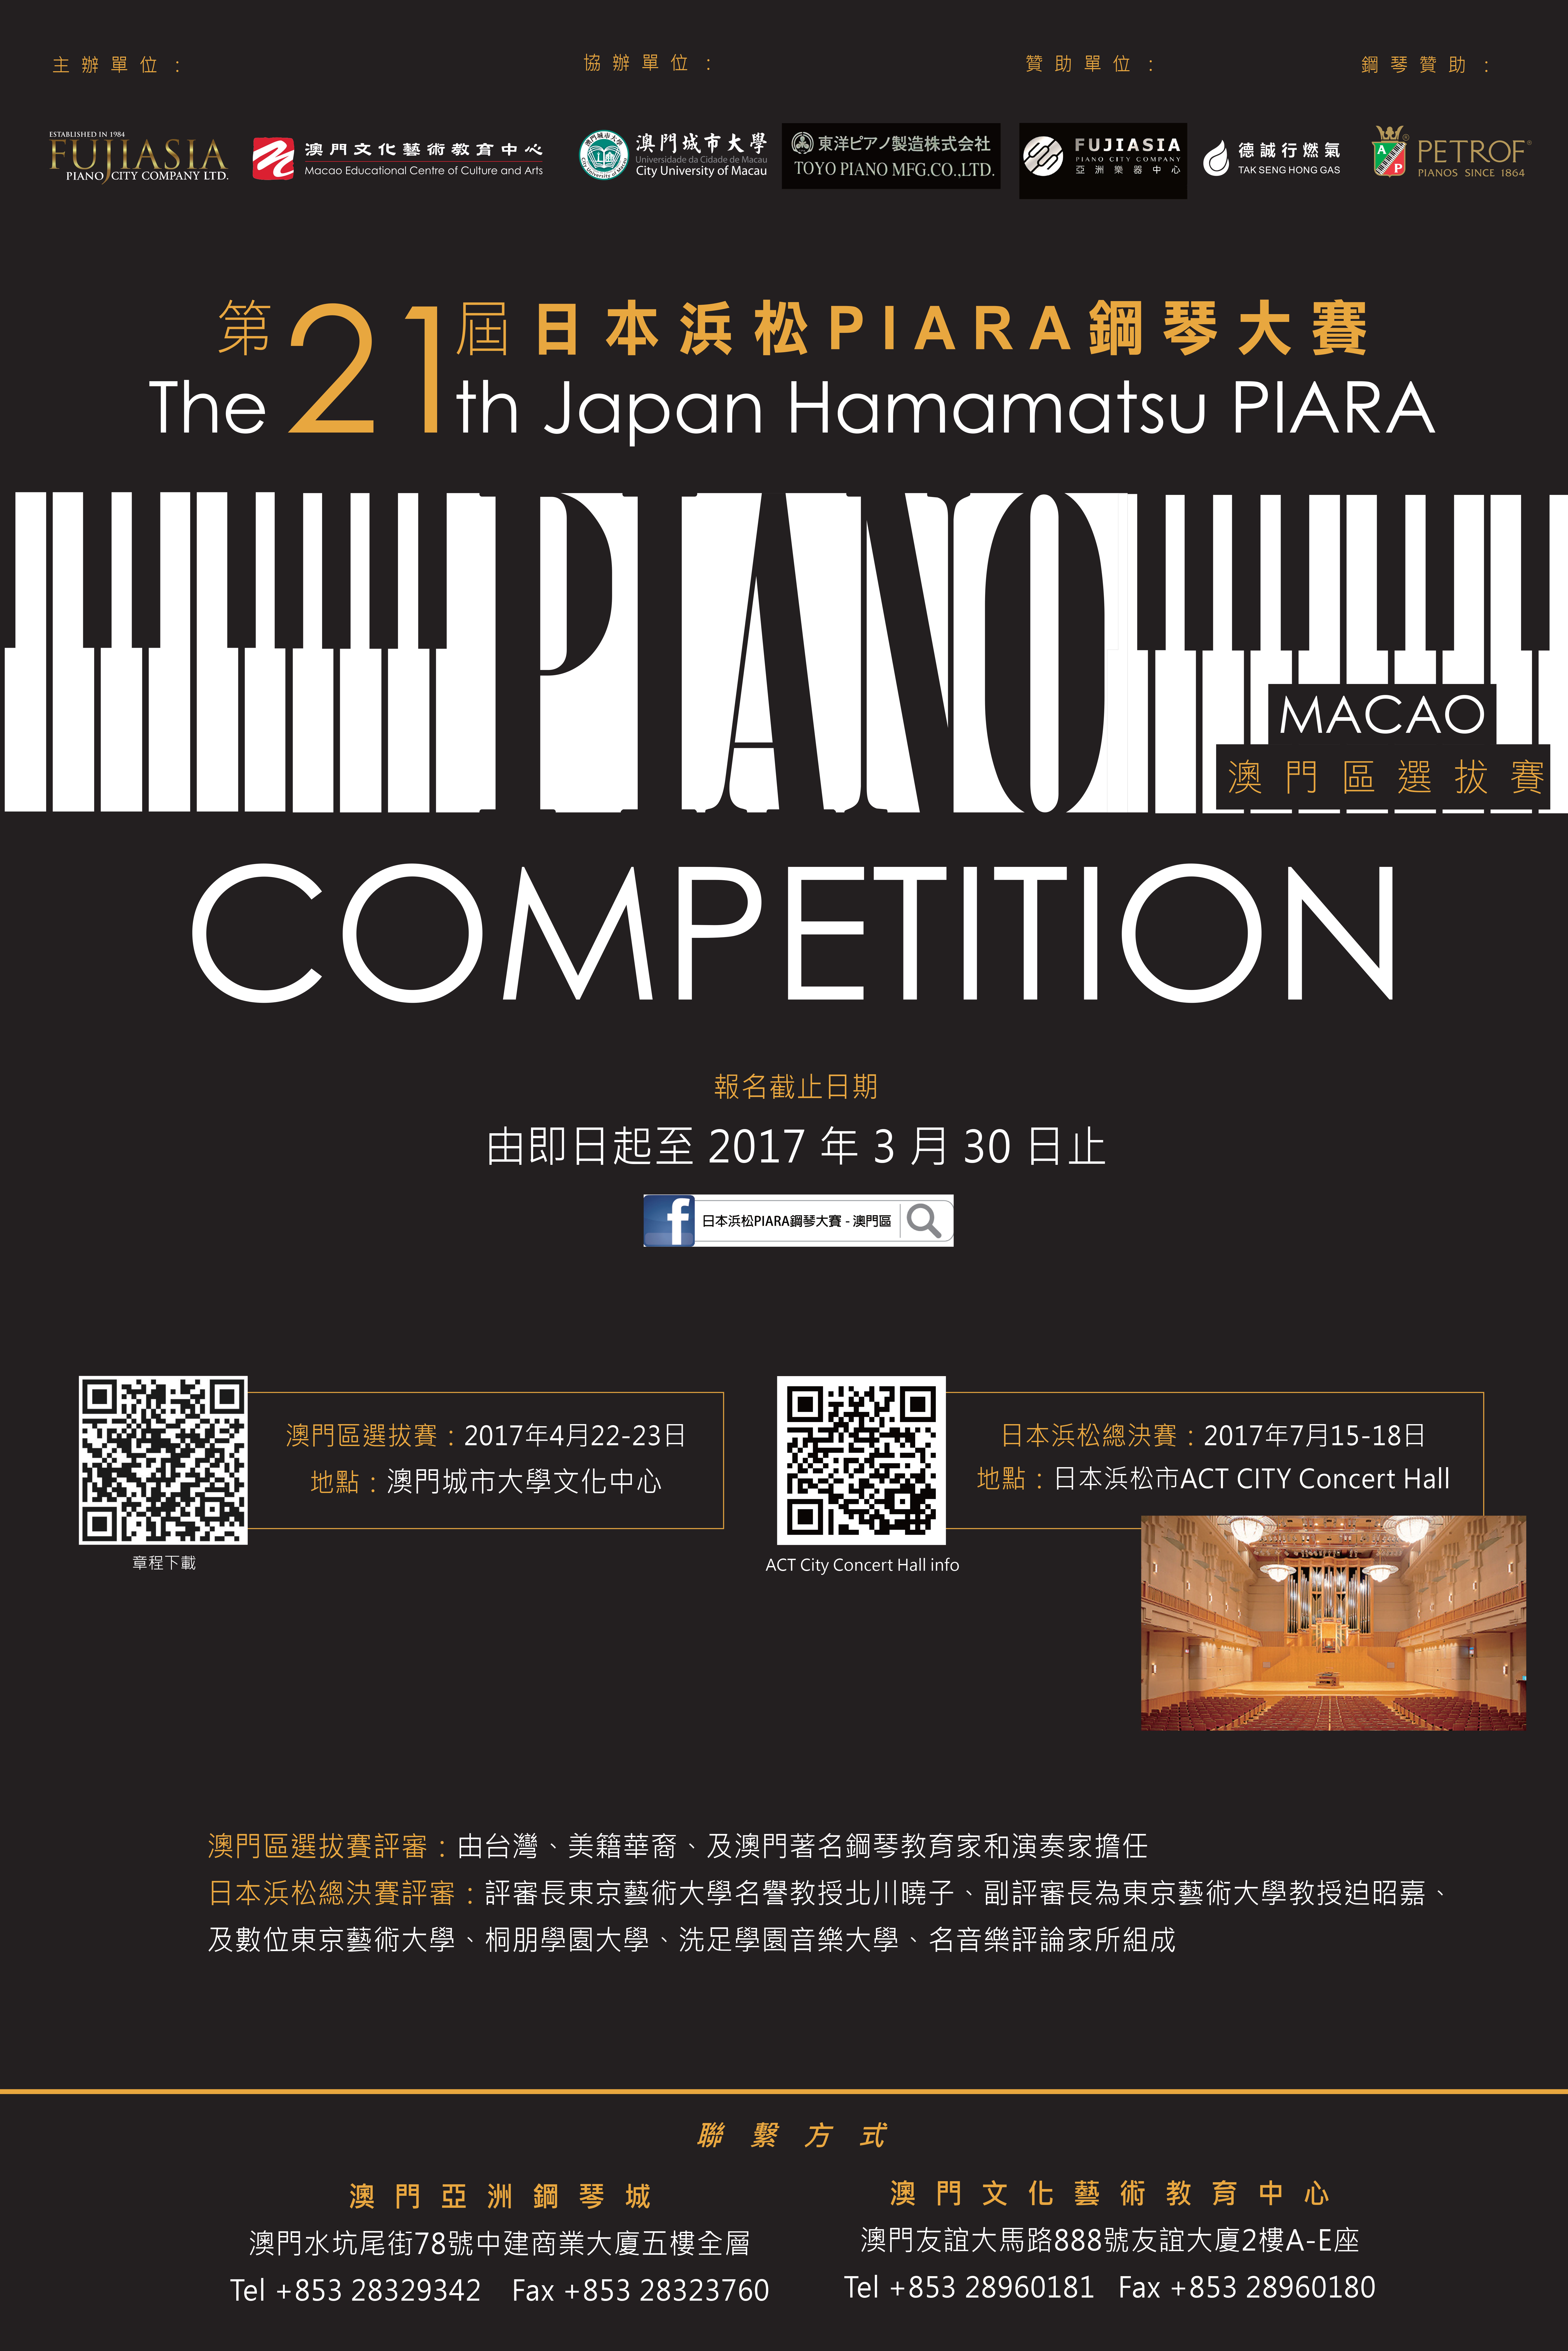 澳門21屆日本濱松鋼琴比賽